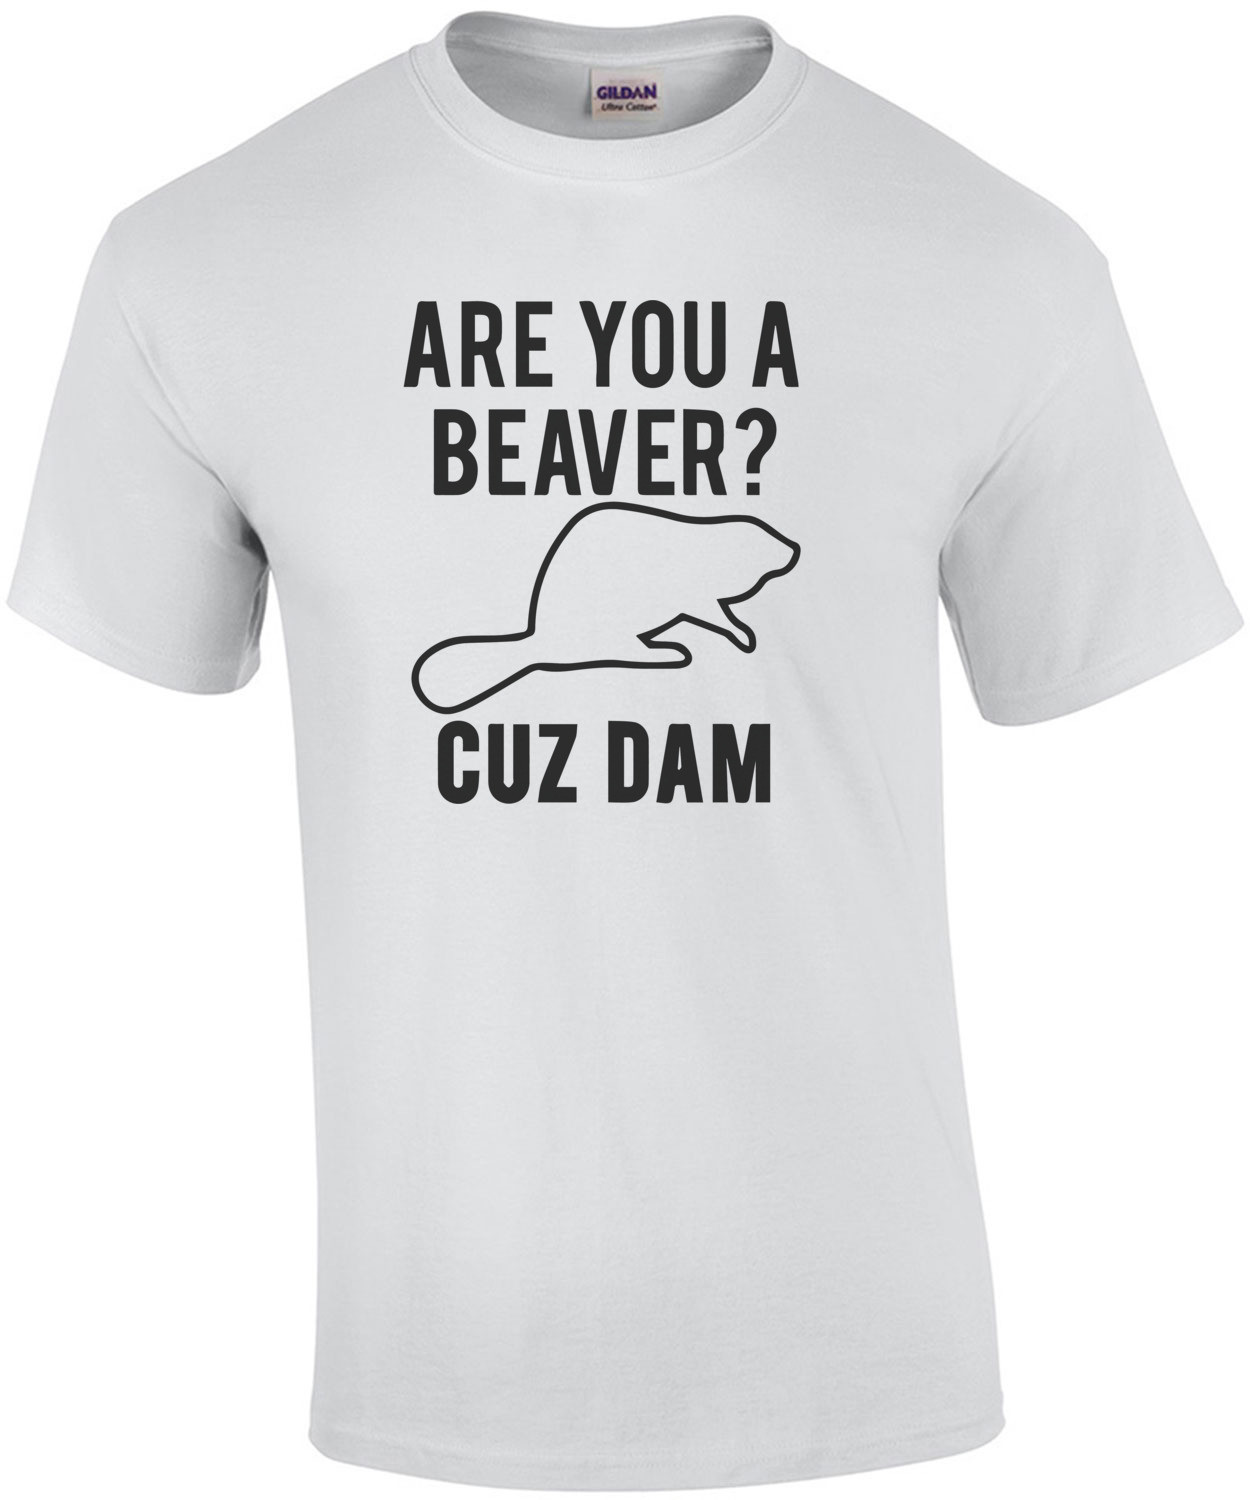 Are you a beaver? Cuz Dam